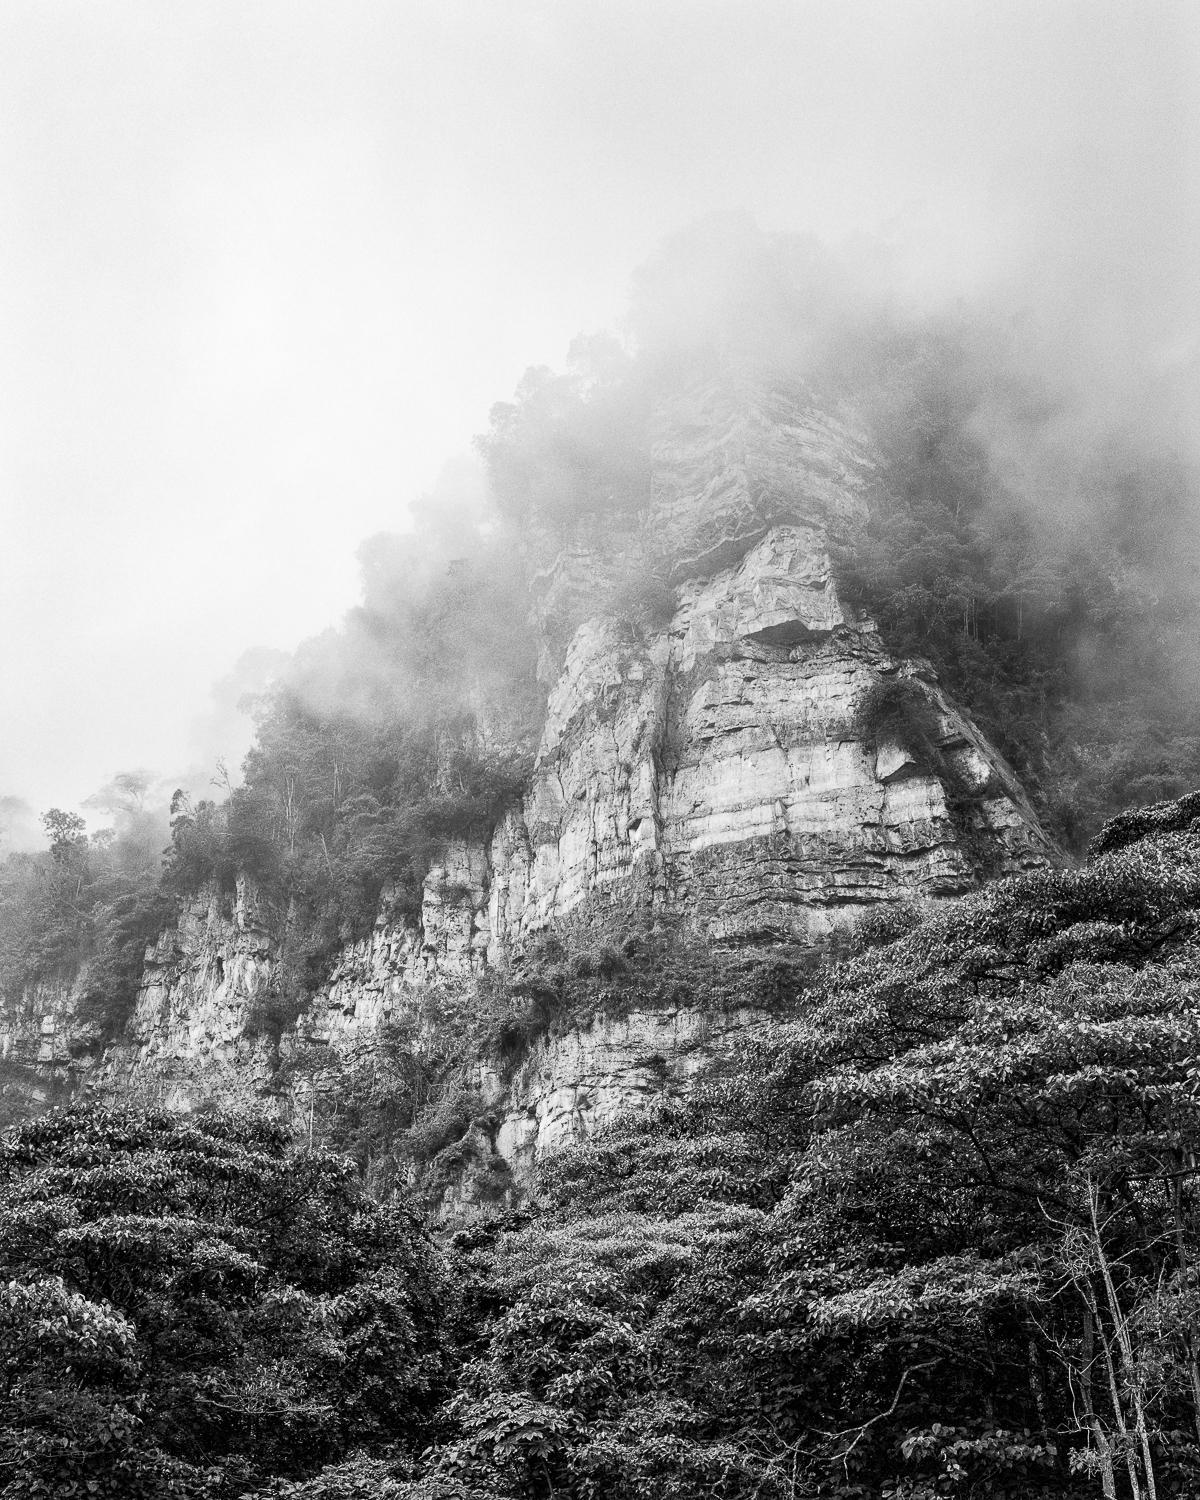 Bosque de niebla Chicaque, Silbergelatinesilberdruck